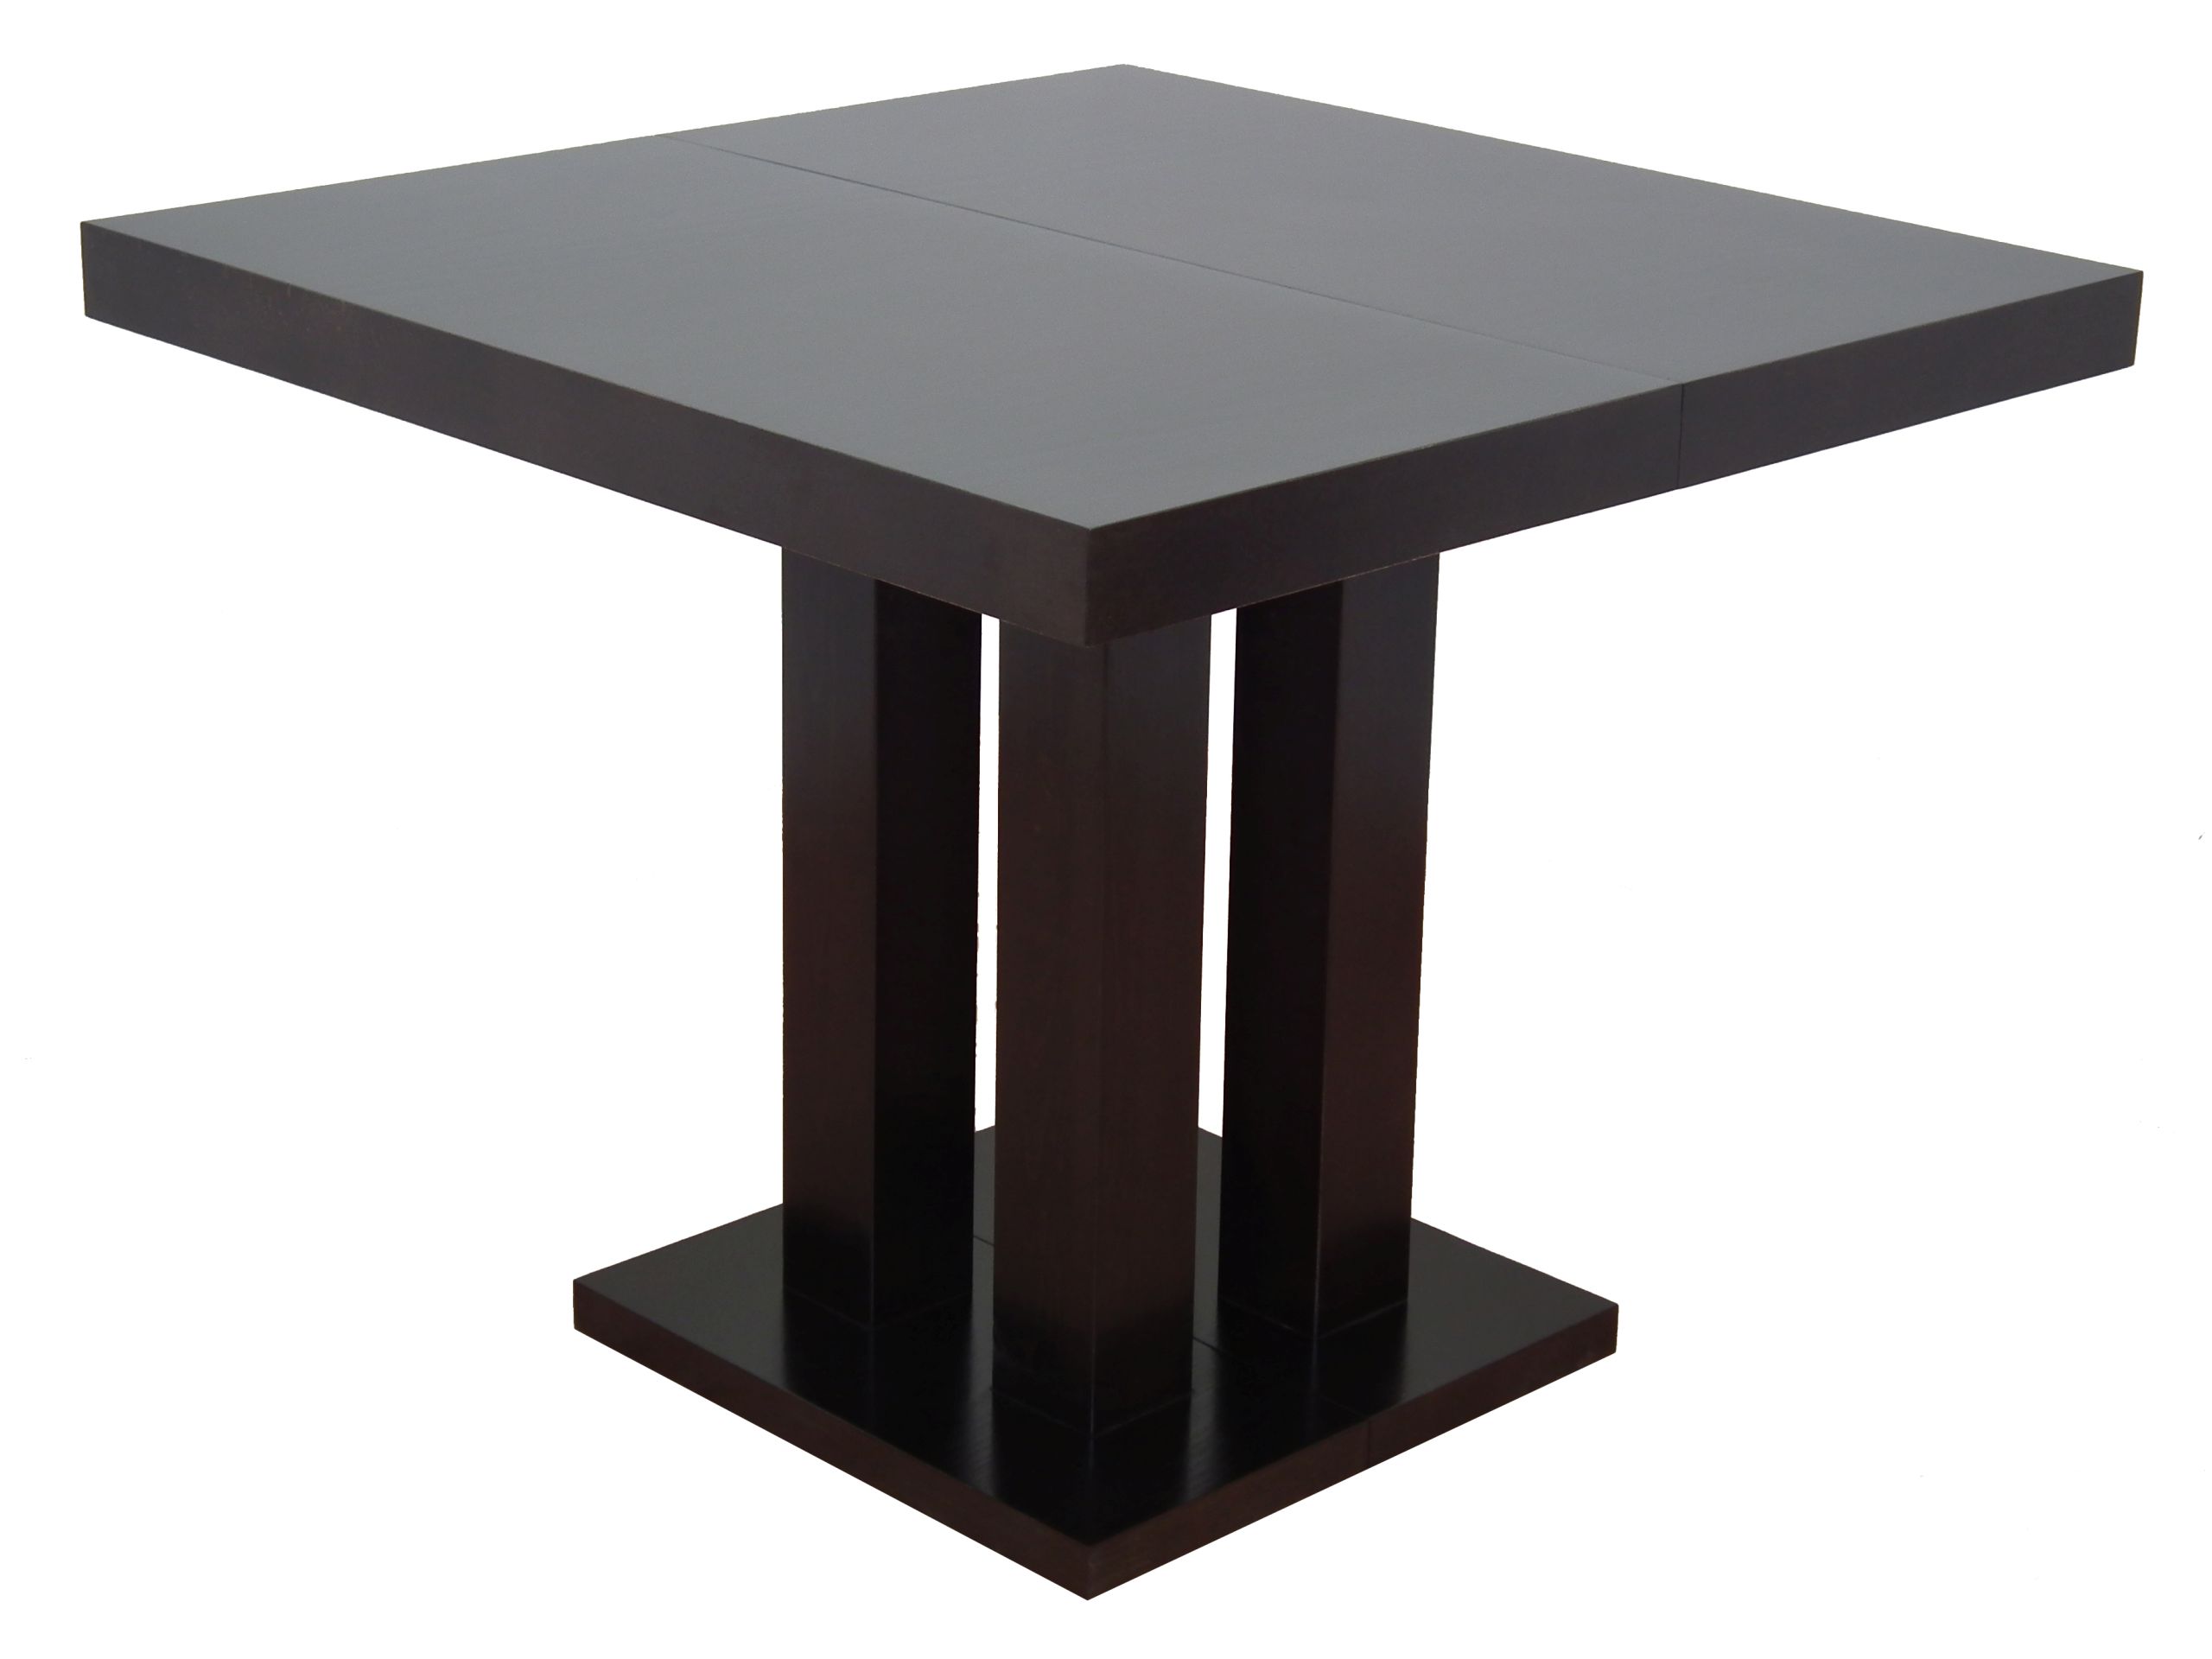 Кухонные столы 90 см. Стол раскладной квадратный 90х90 ФС 02.28. Стол 80 80 раскладной. Стол квадратный раскладной 80 80. Стол раскладной 80х80 керамика.